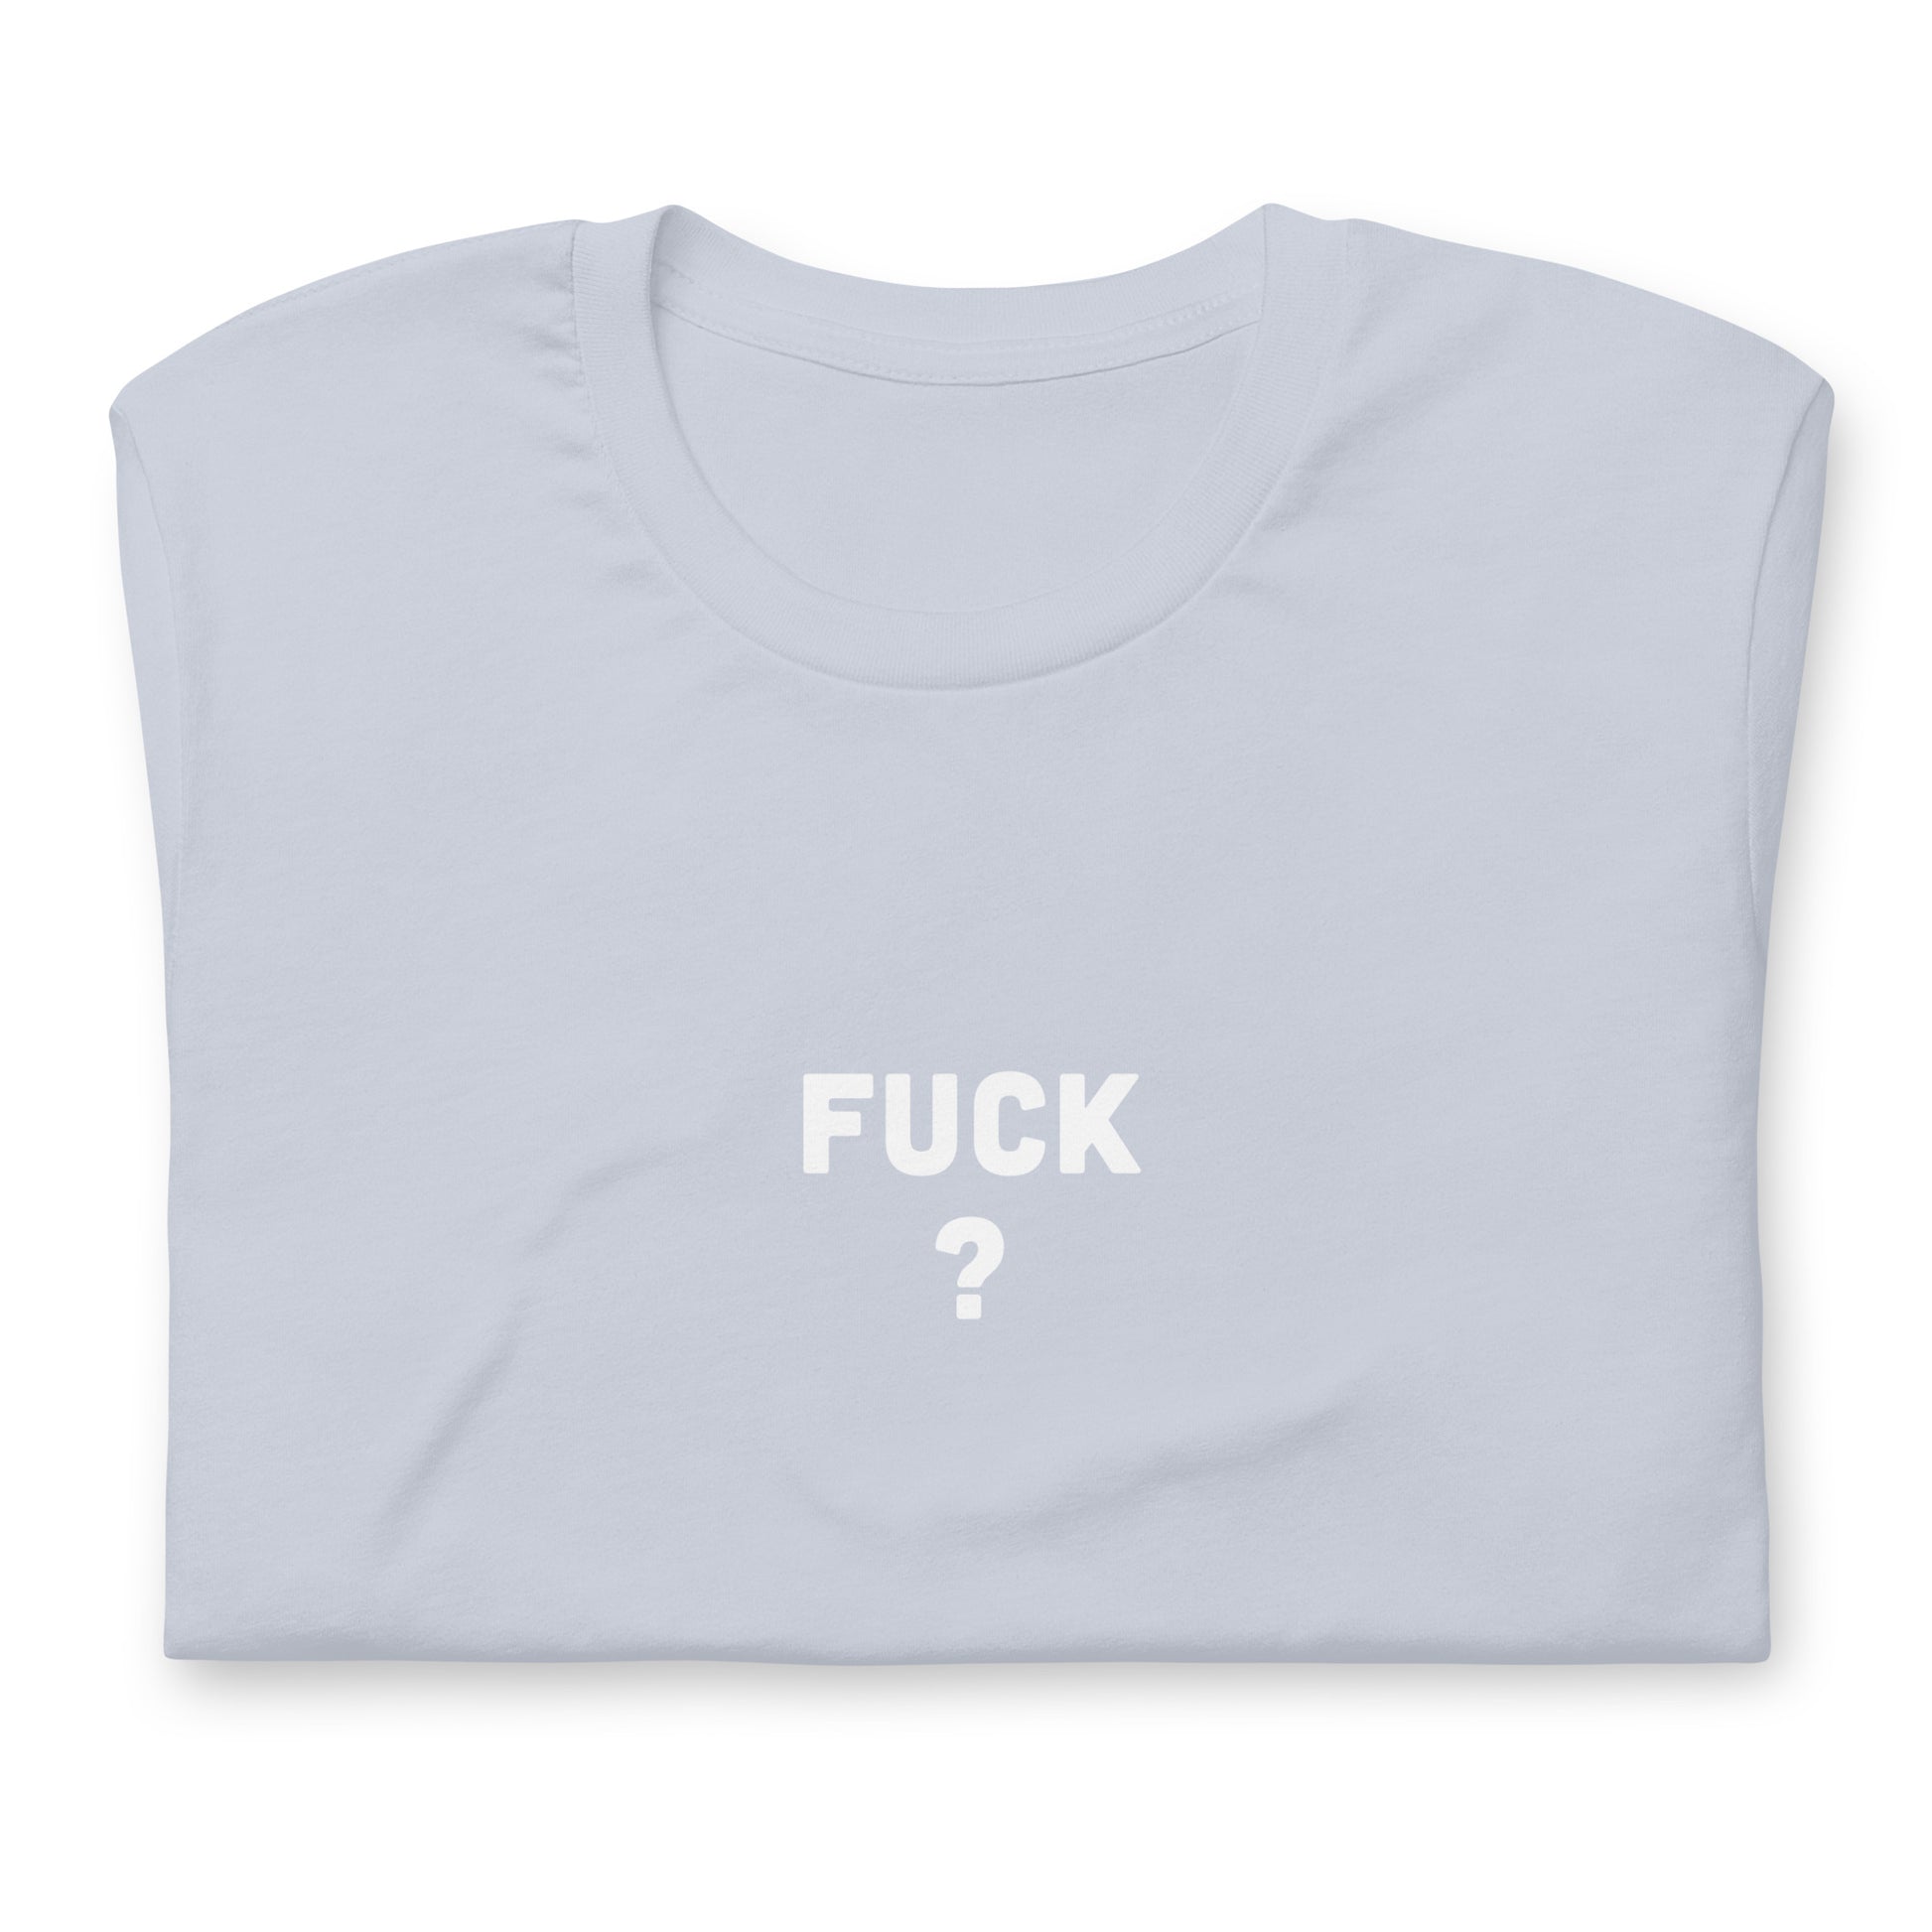 Fuck T-Shirt Size M Color Asphalt